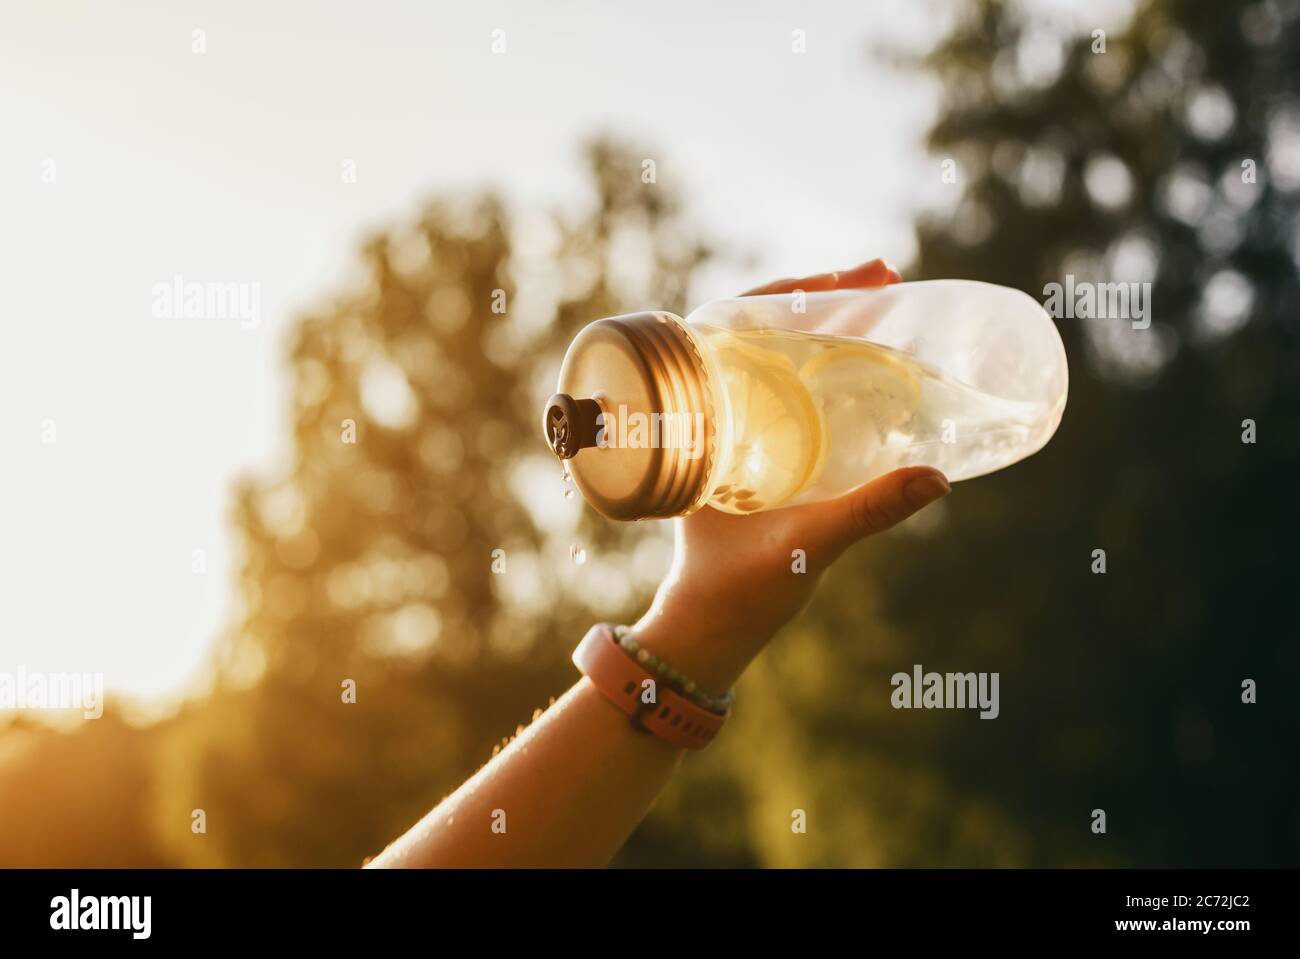 https://c8.alamy.com/comp/2C72JC2/hand-holds-cold-lemonade-in-plastic-bottle-in-contrast-light-2C72JC2.jpg